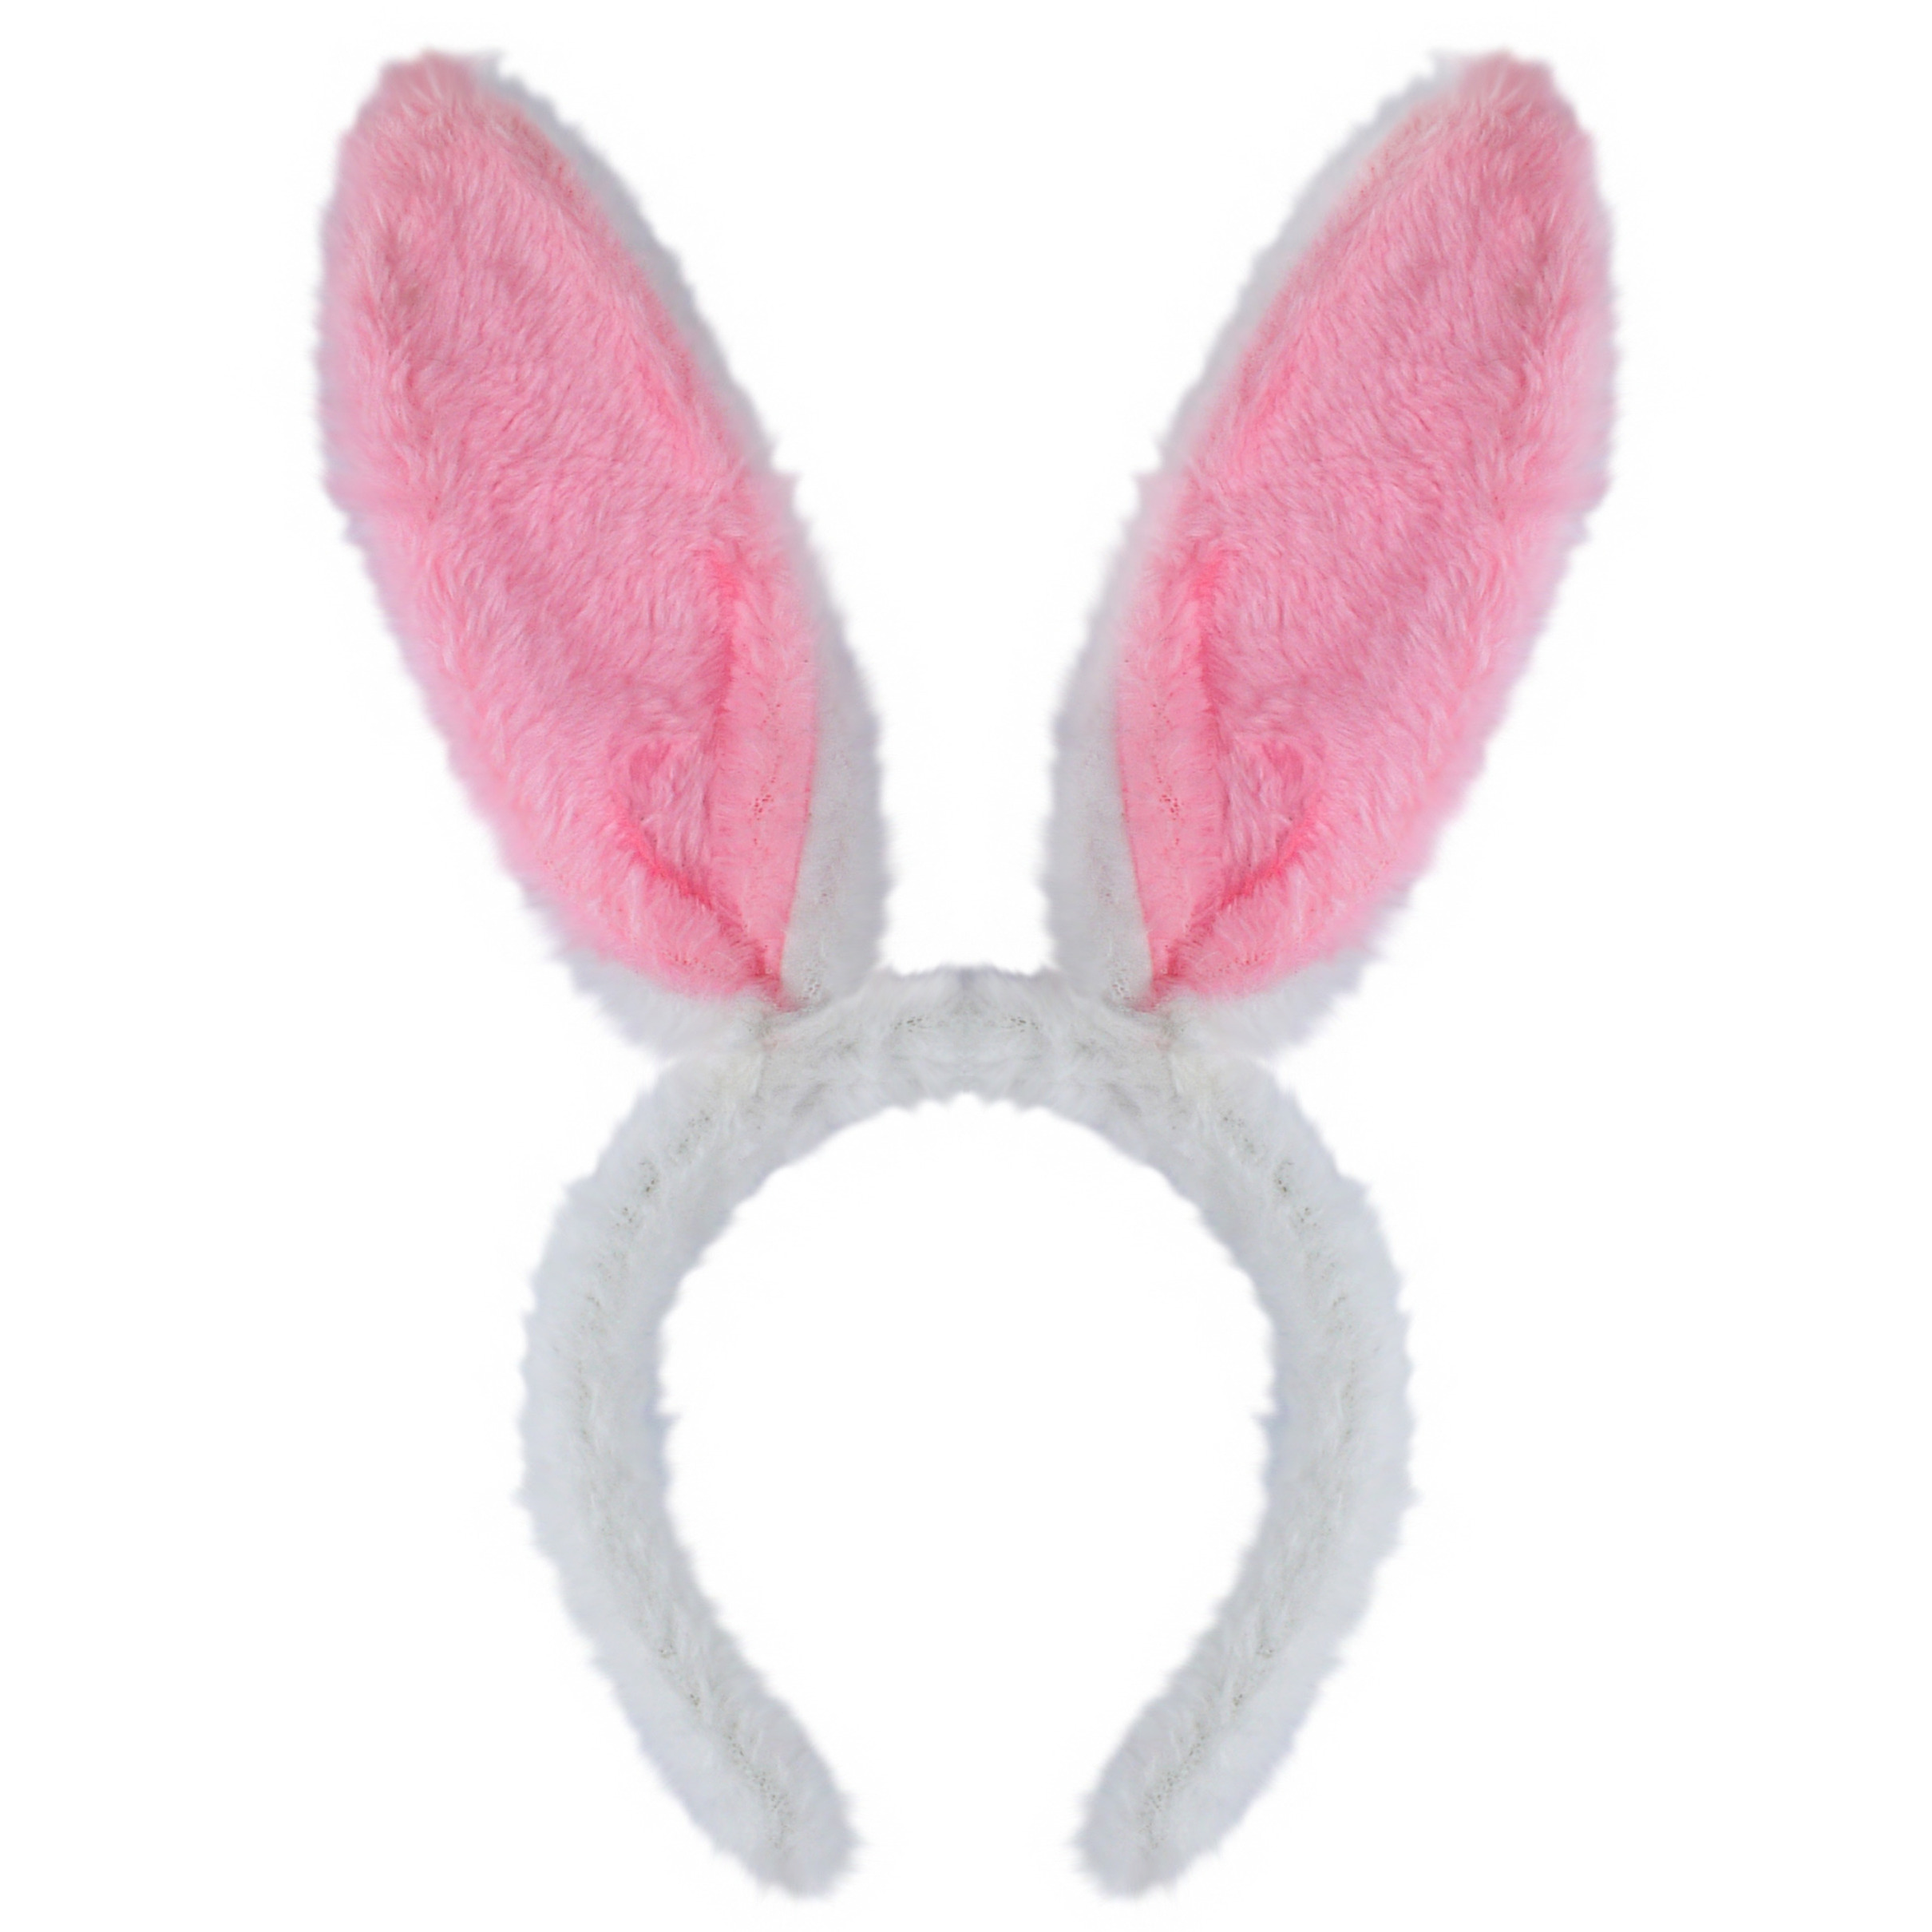 Konijnen/bunny oren wit met roze voor volwassenen 29 x 23 cm